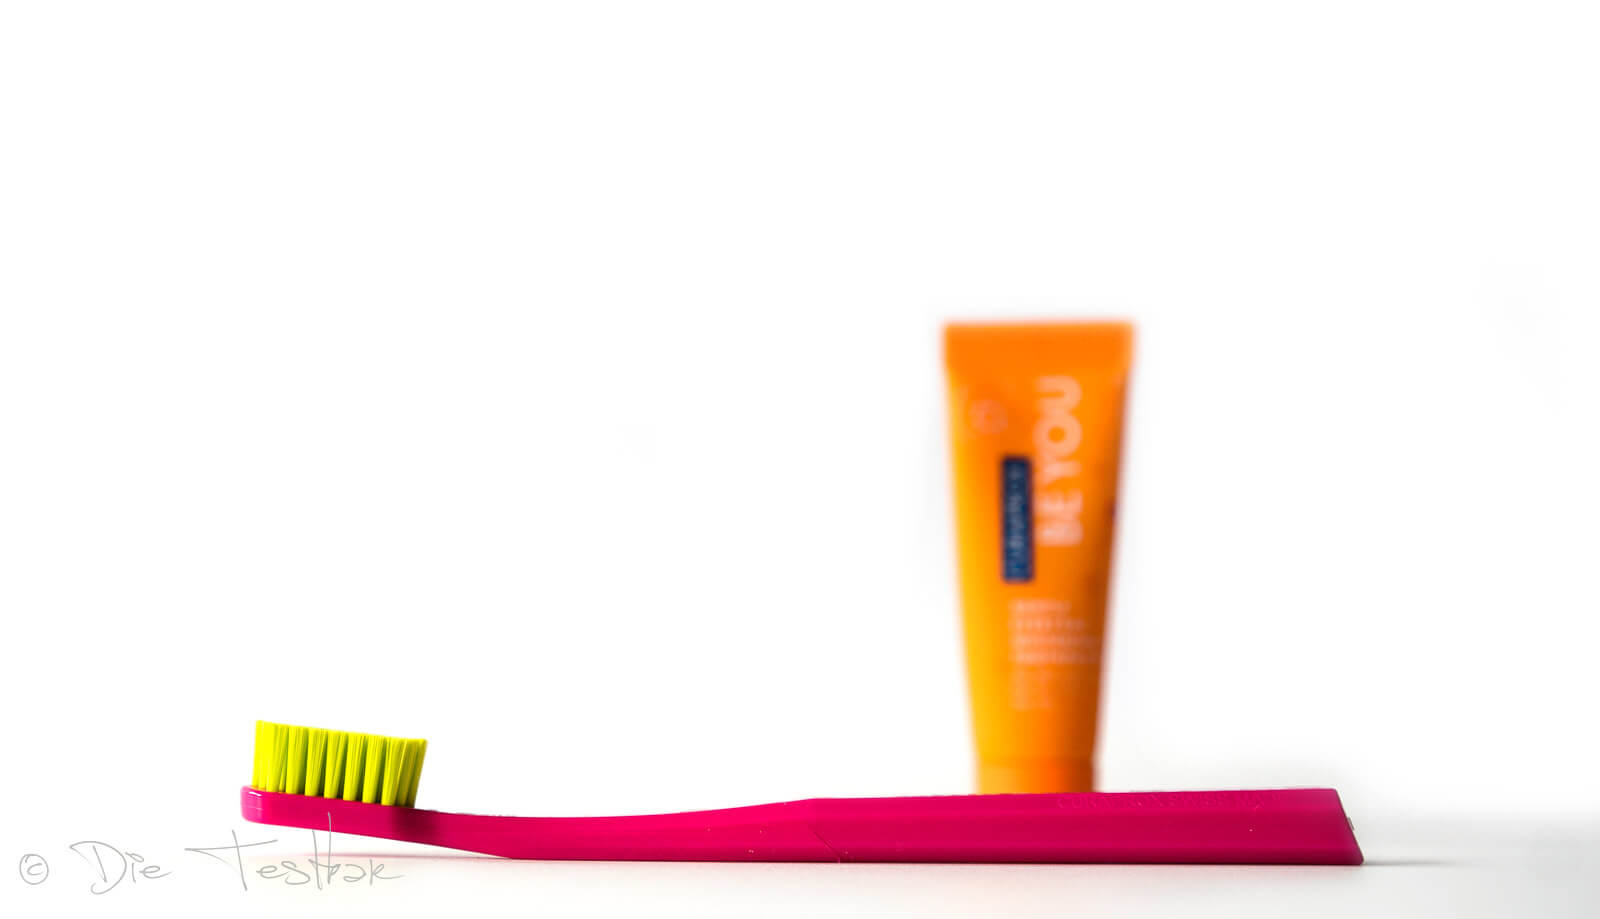 Curaprox - Stylisch bunte und innovative Zahnpflege - Alles für die perfekte Mundpflege 24